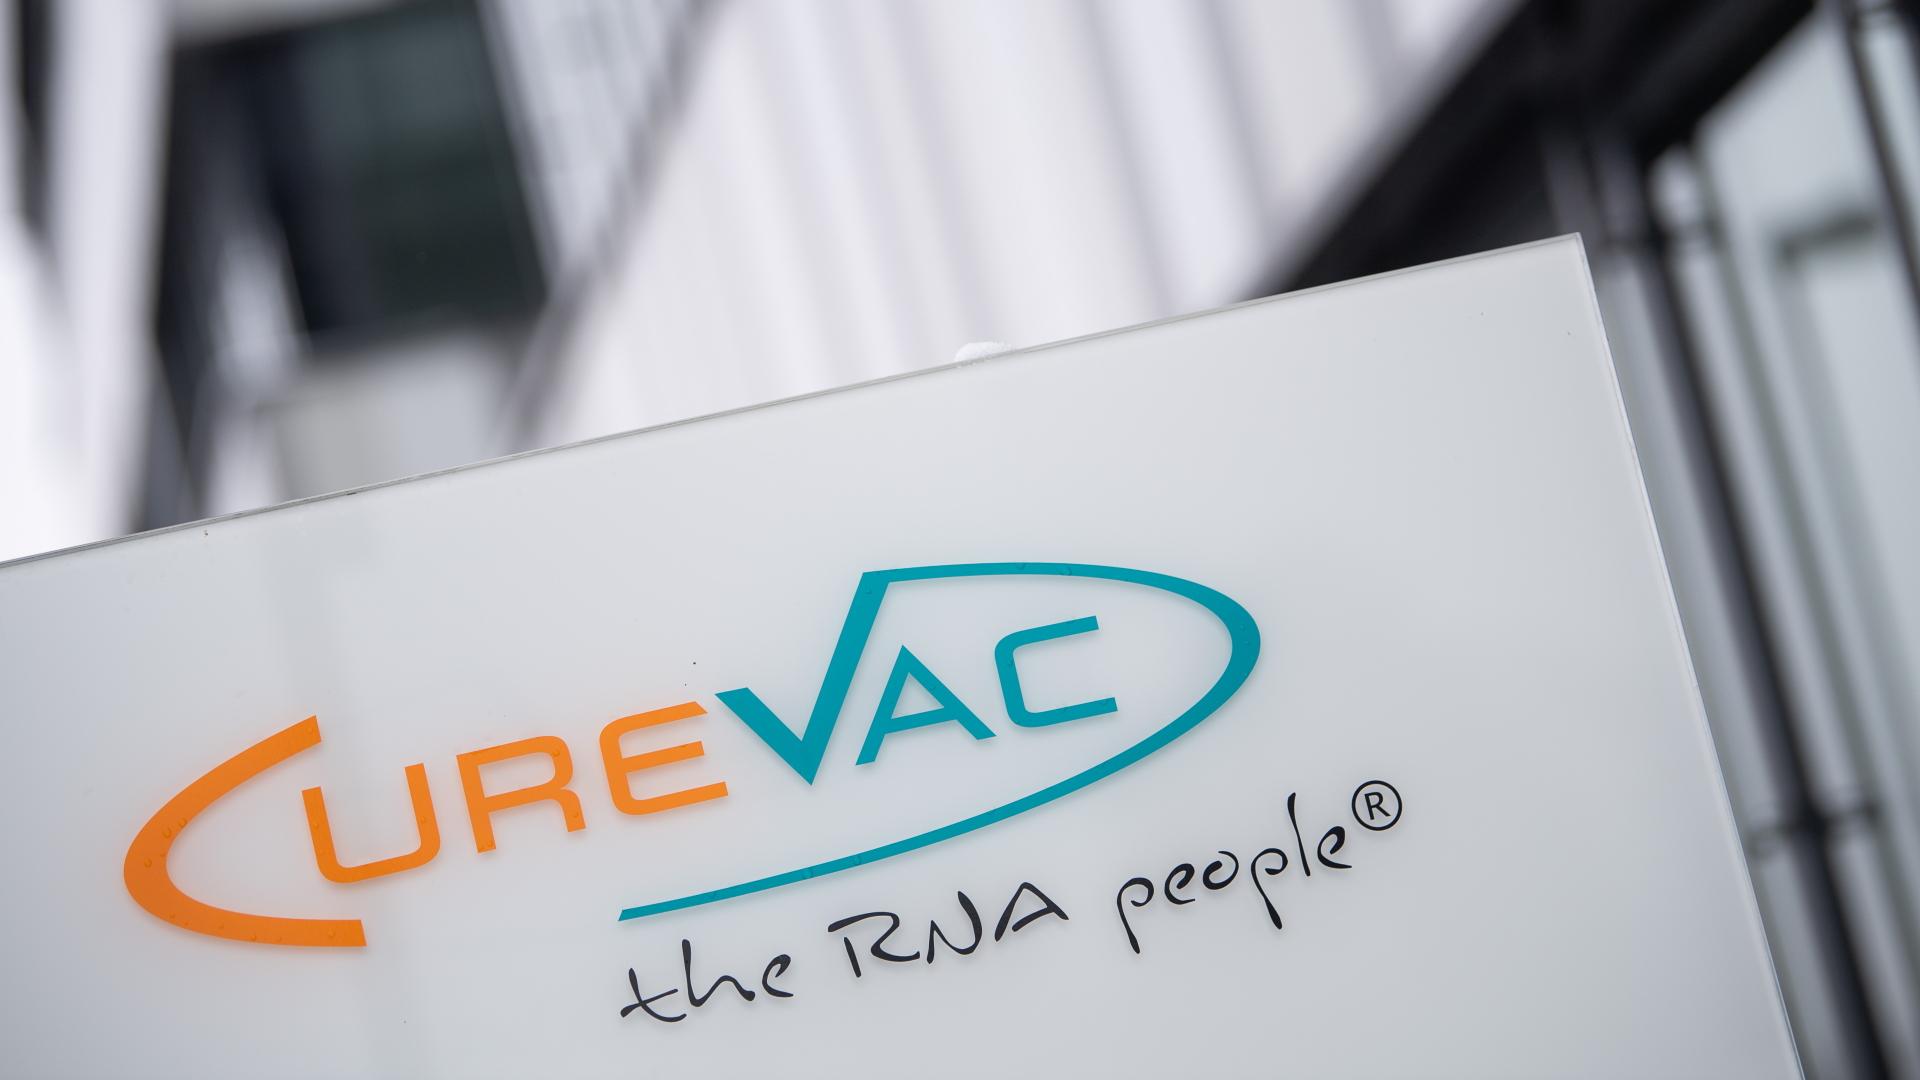 Das Logo des Unternehmens CureVac mit dem Slogan "the RNA people" steht an der Unternehmenszentrale.